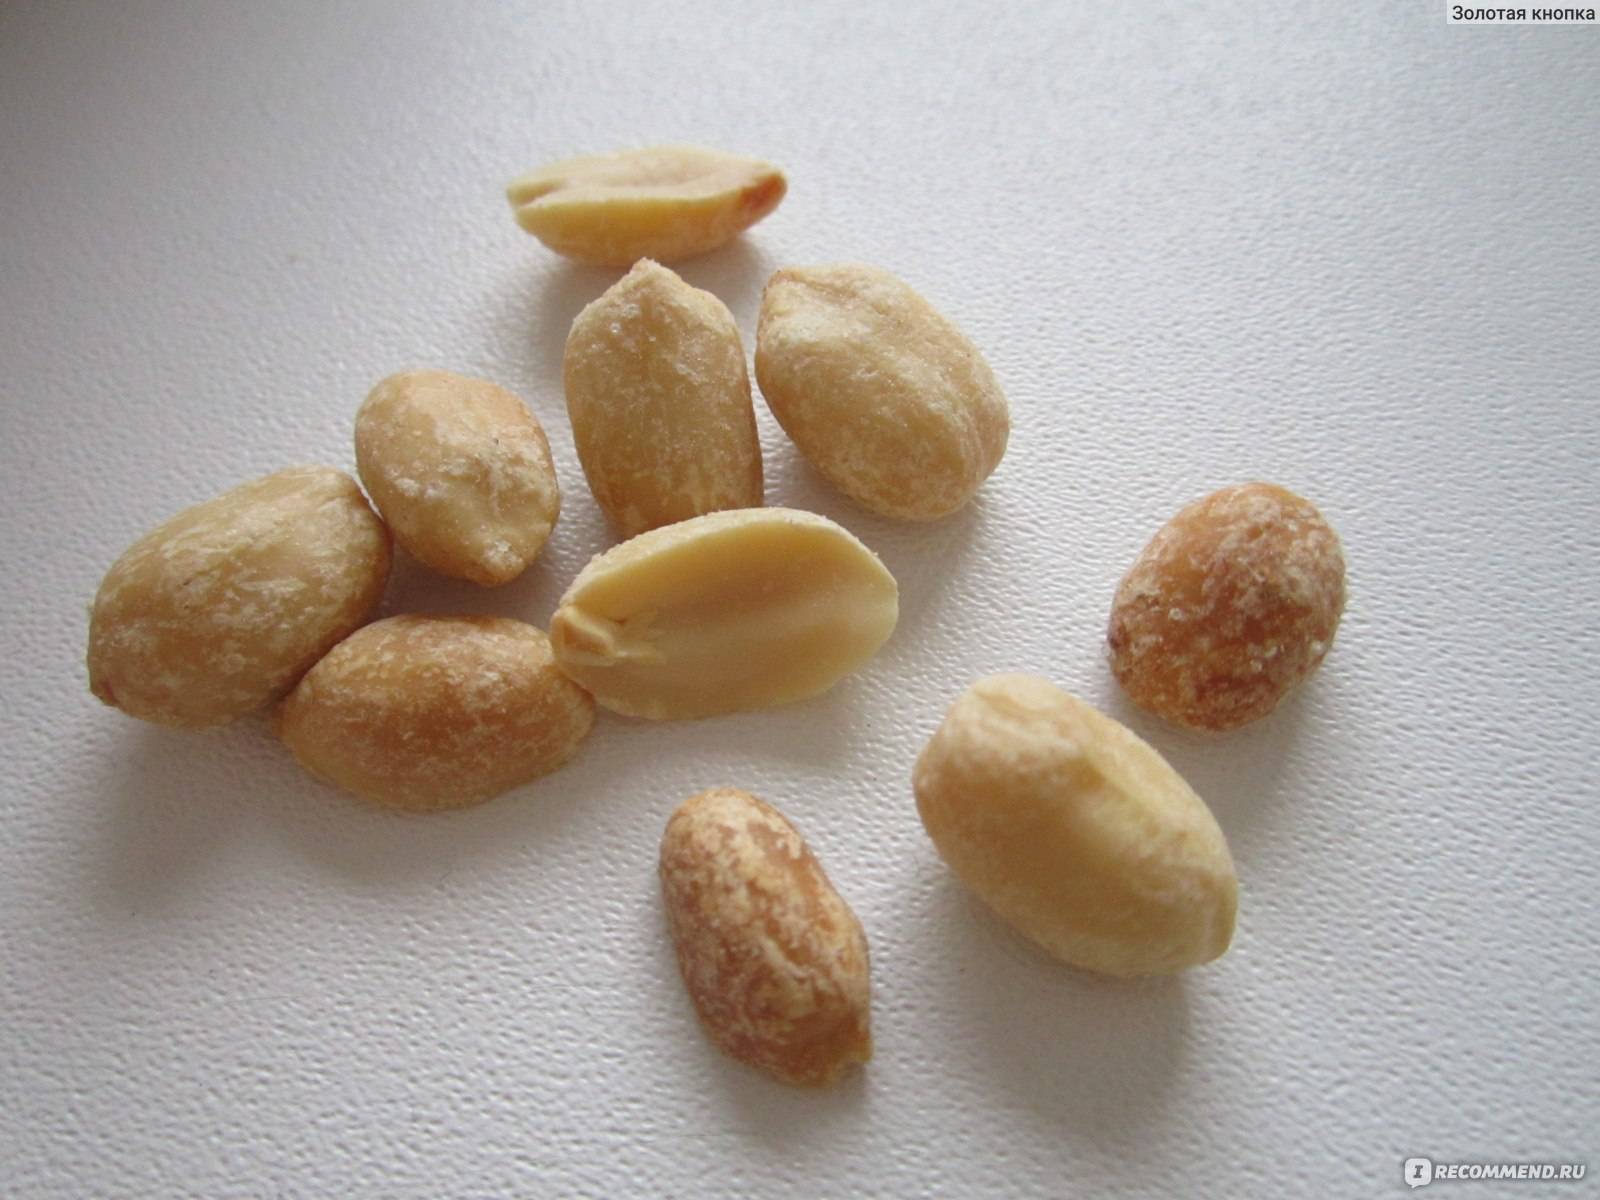 Арахис при грудном вскармливании в первый месяц, употребление соленого и жареного арахиса при лактации